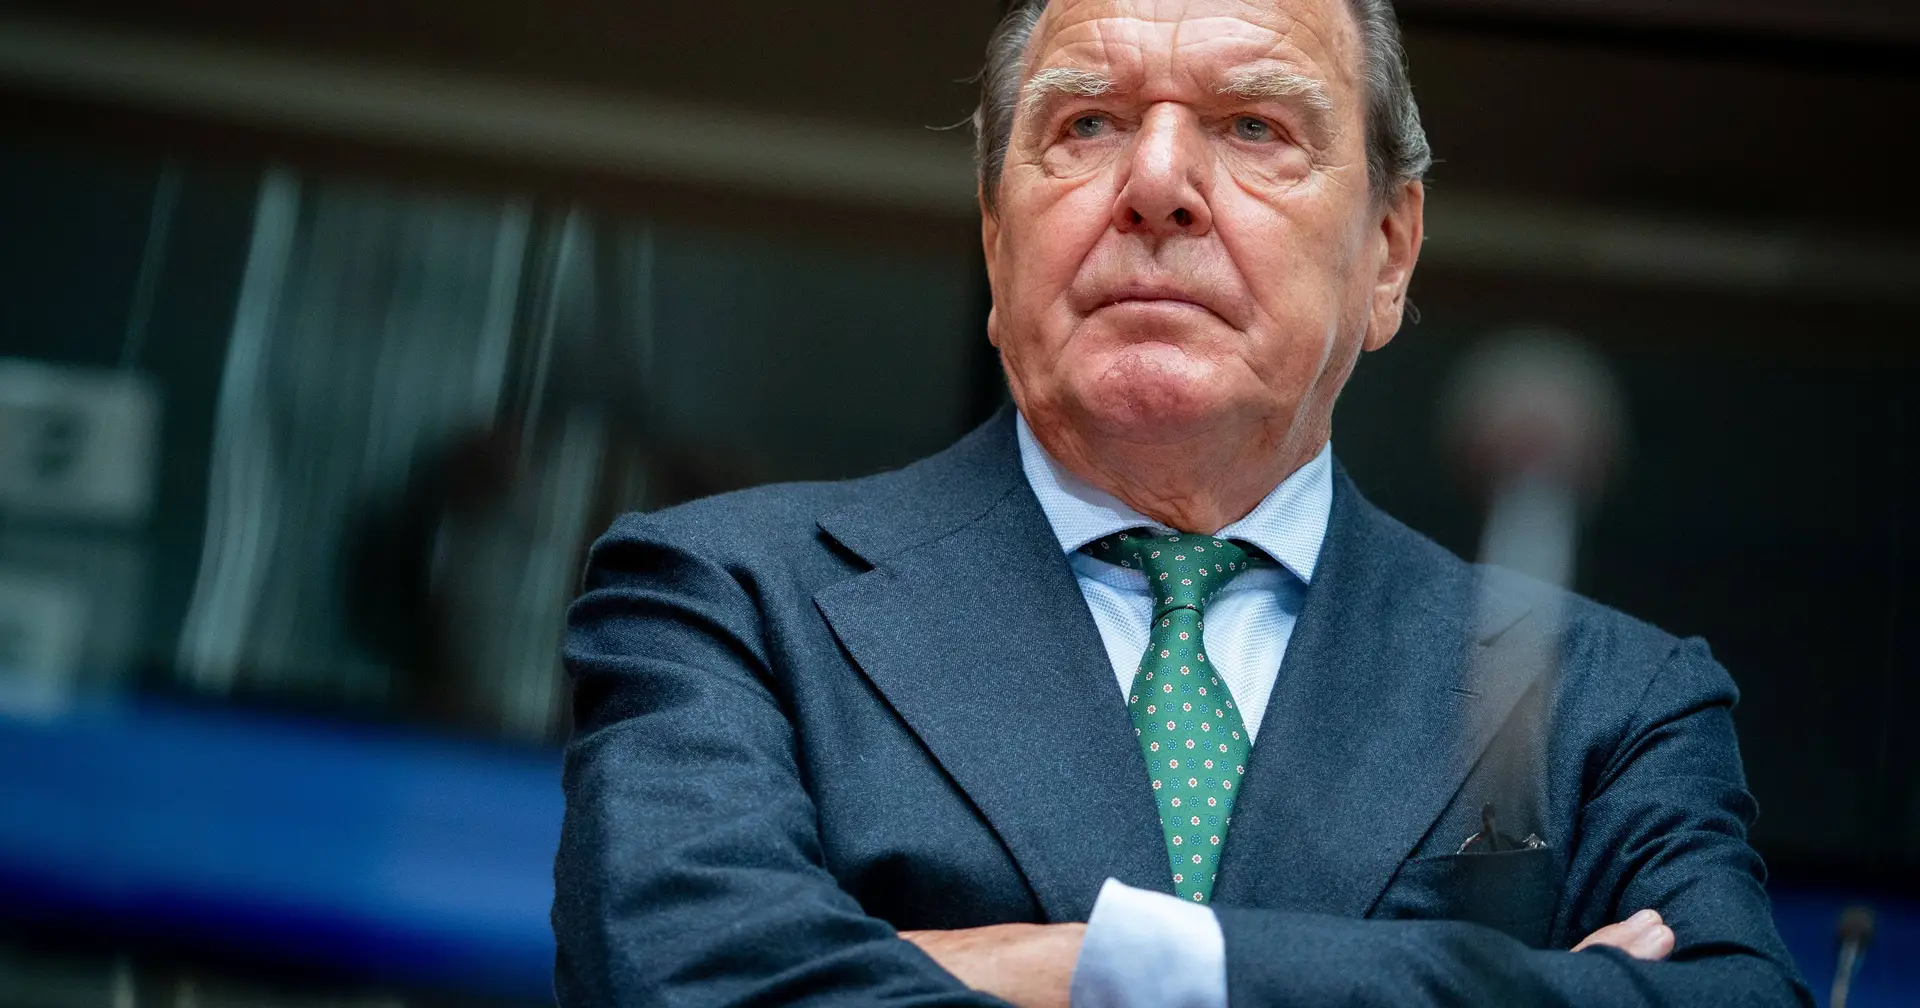 Alemanha admite reverter vantagens concedidas a Gerhard Schröder, próximo a Putin